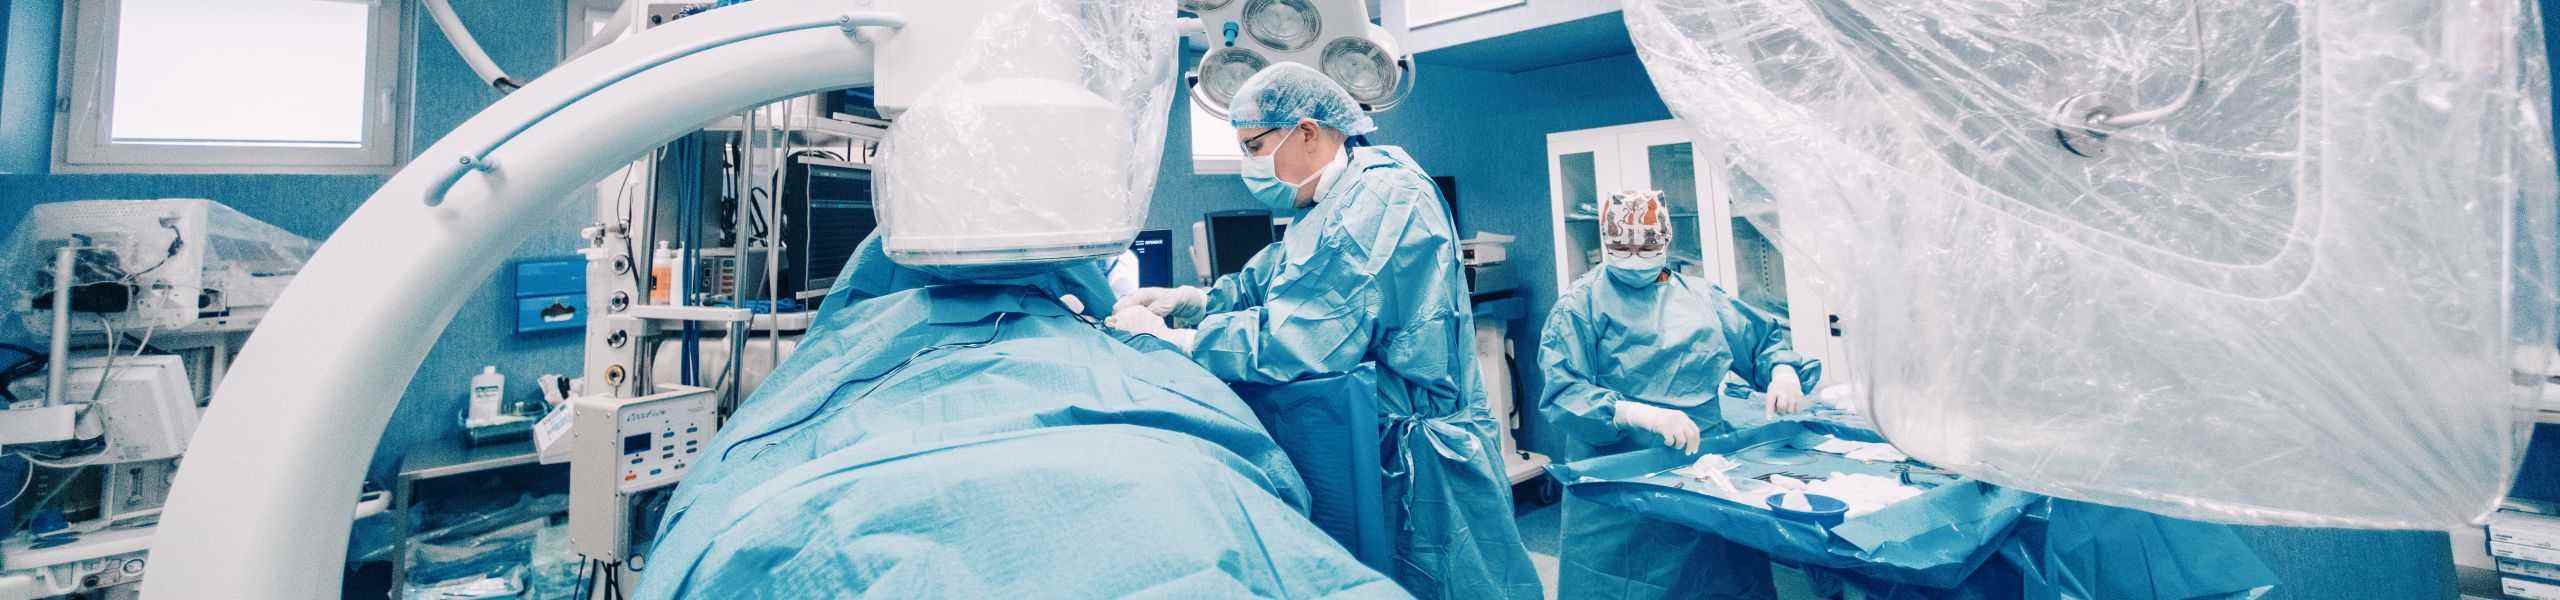 kauno klinikos burnos chirurgas registracija palaiko sužeistas 2 mėnesius